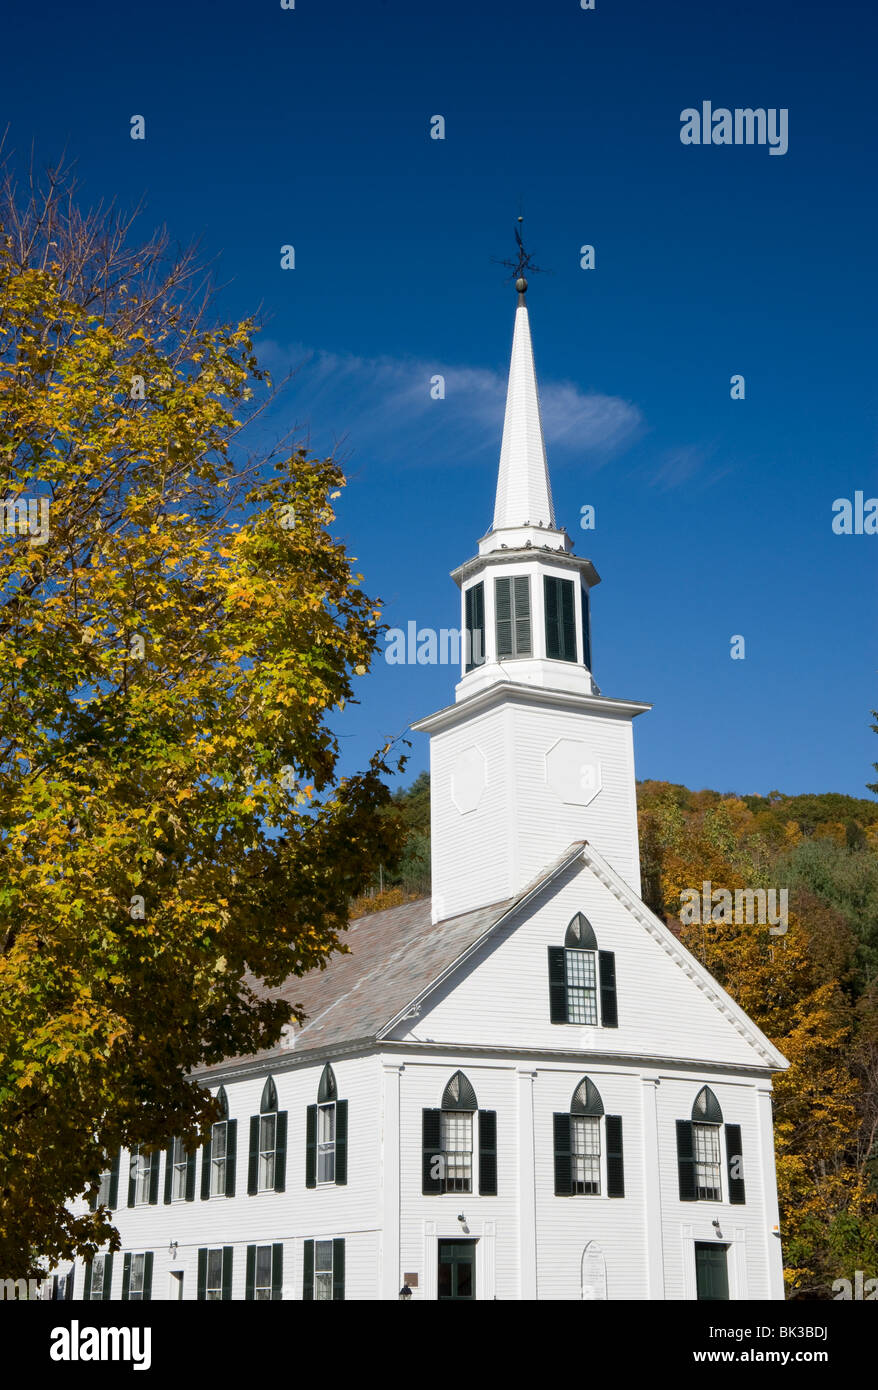 Traditionelle weiße Kirche, umgeben von Herbstlaub in Townshend, Vermont, New England, Vereinigte Staaten von Amerika Stockfoto